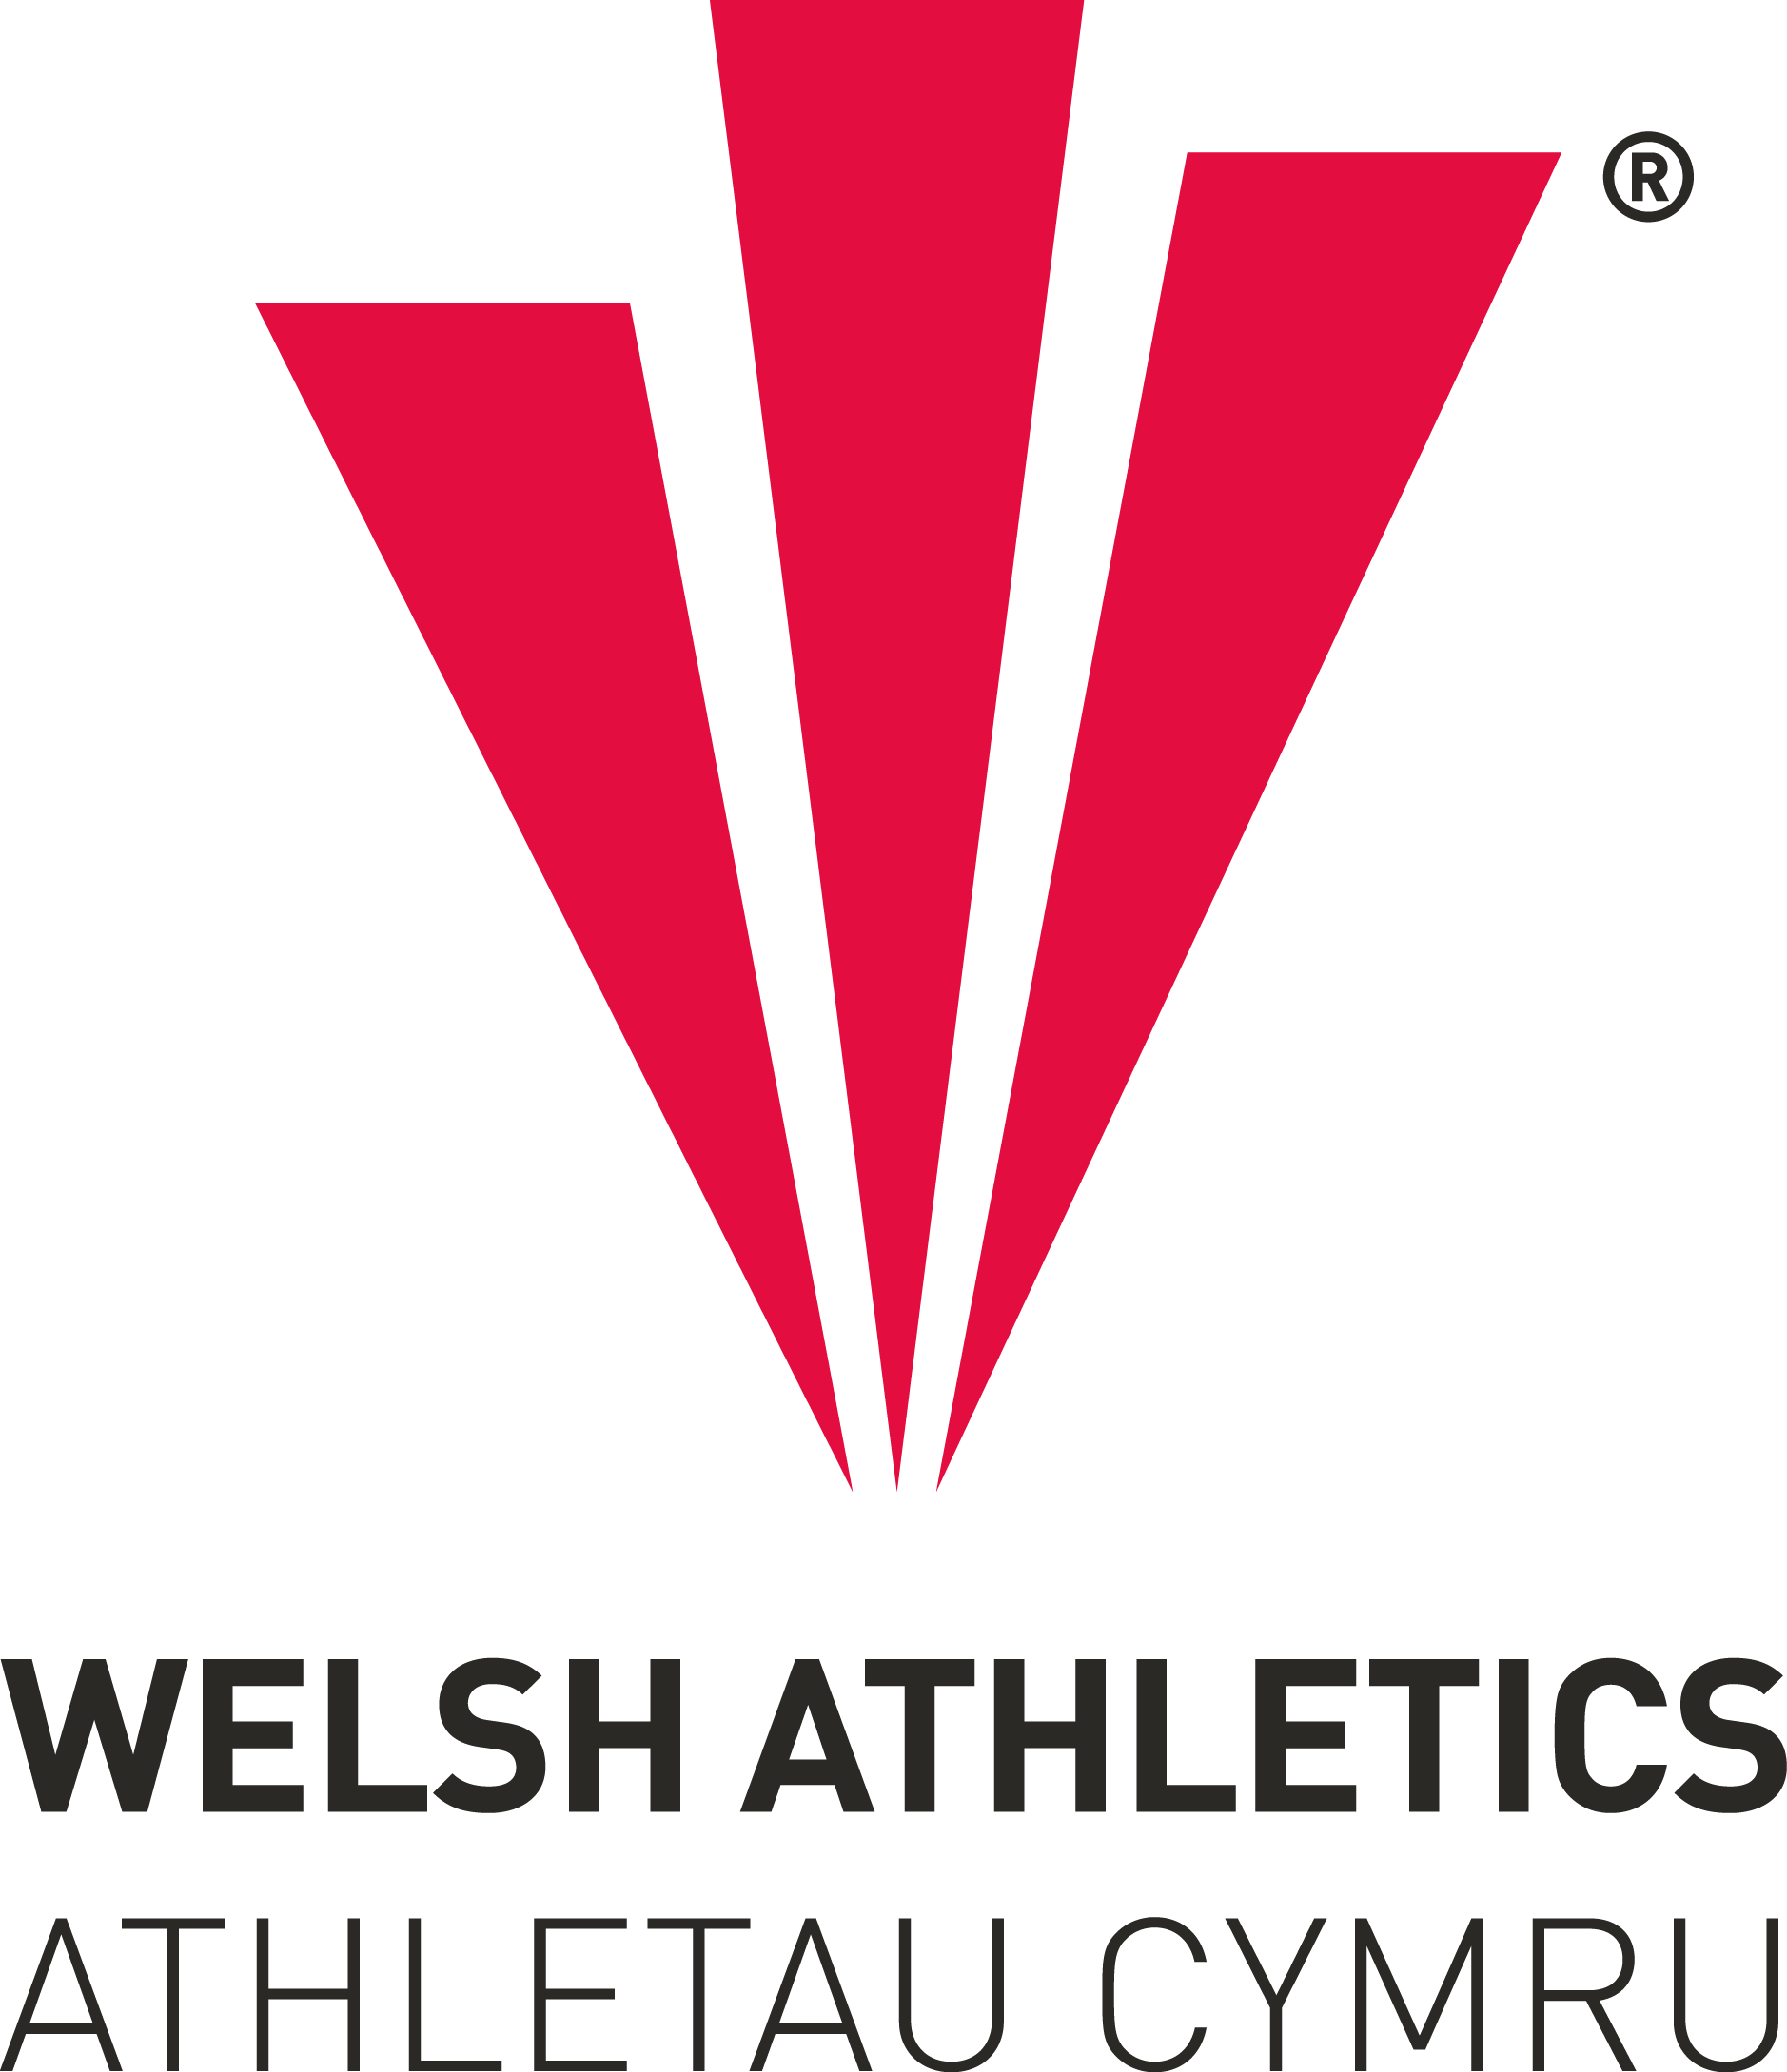 Logo Athletau Cymru 2.png